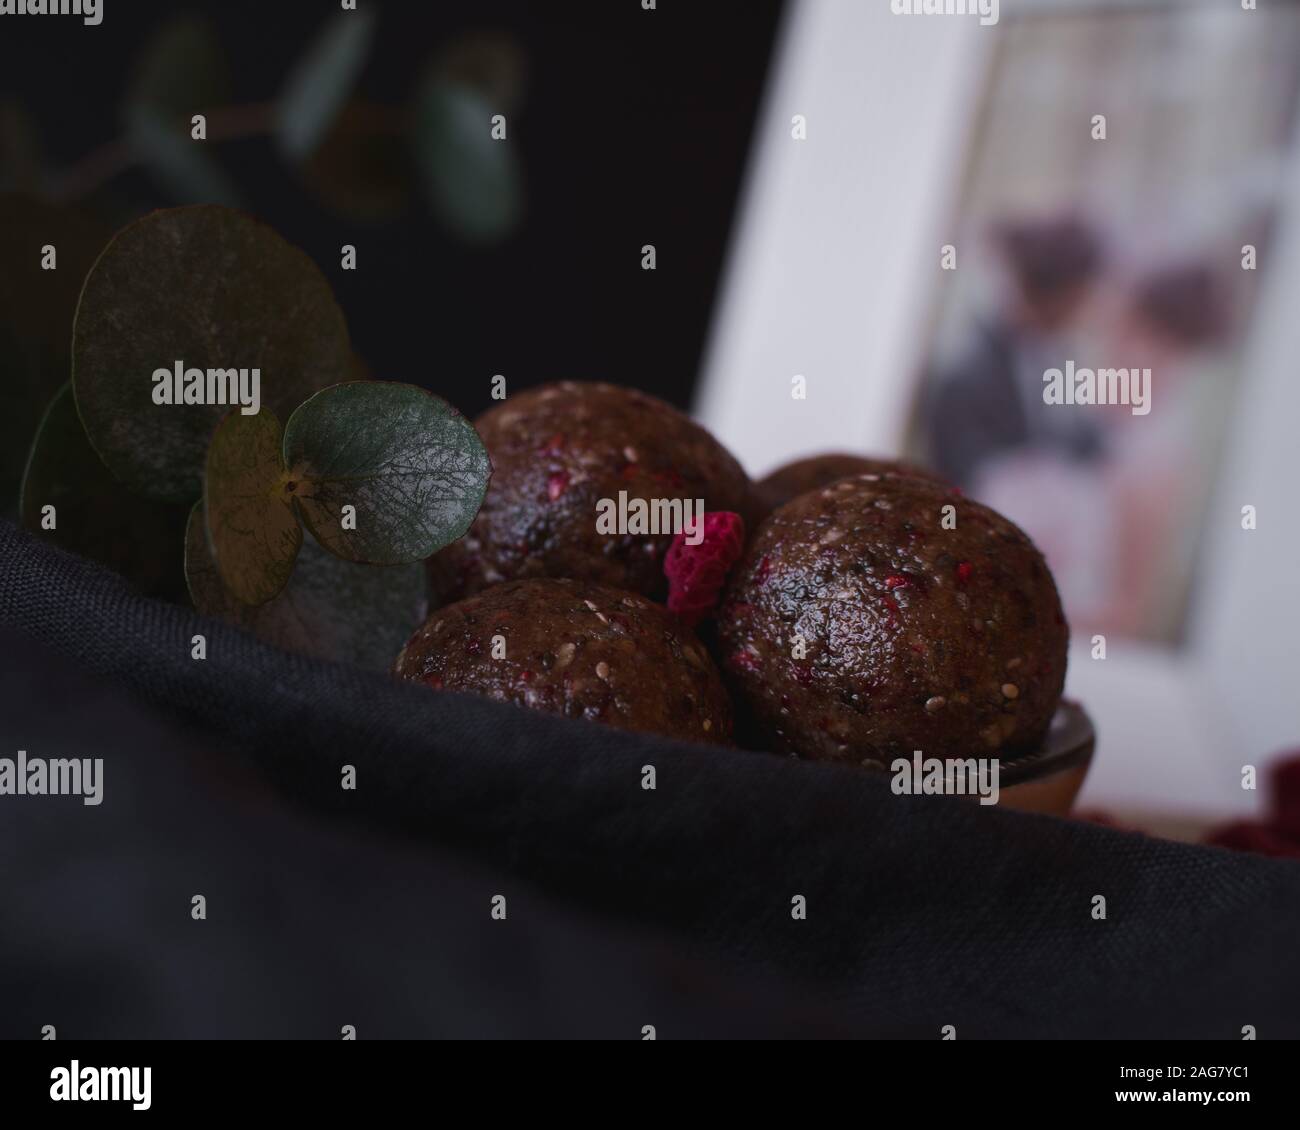 Photo à mise au point sélective grand angle d'un bol de délicieux boules de framboises au chocolat Banque D'Images